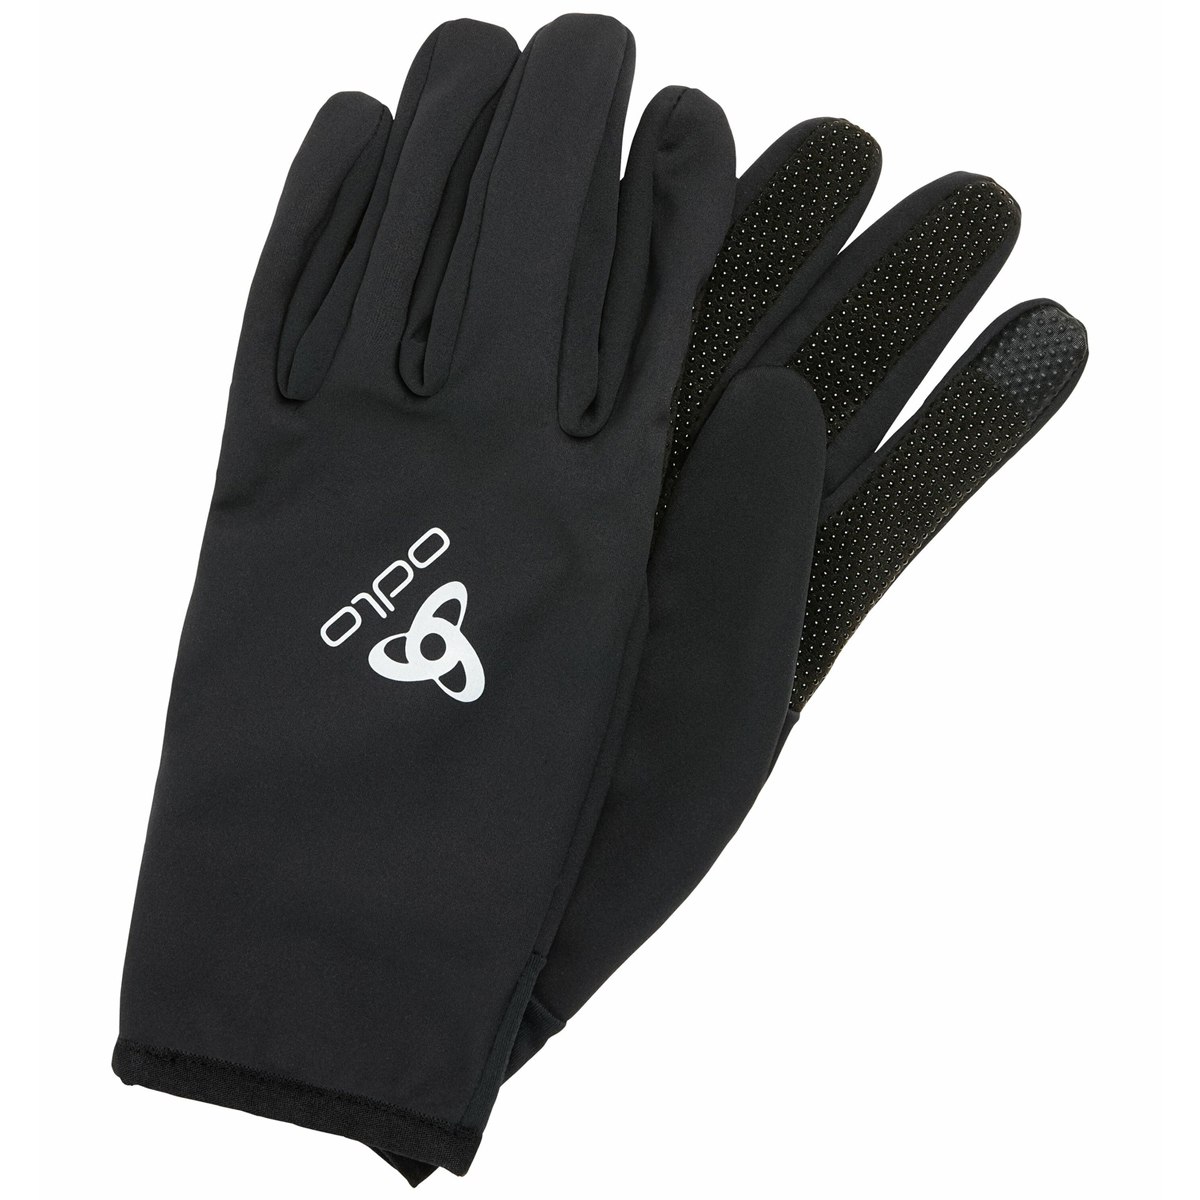 Productfoto van Odlo Ceramiwarm Grip Handschoenen - zwart